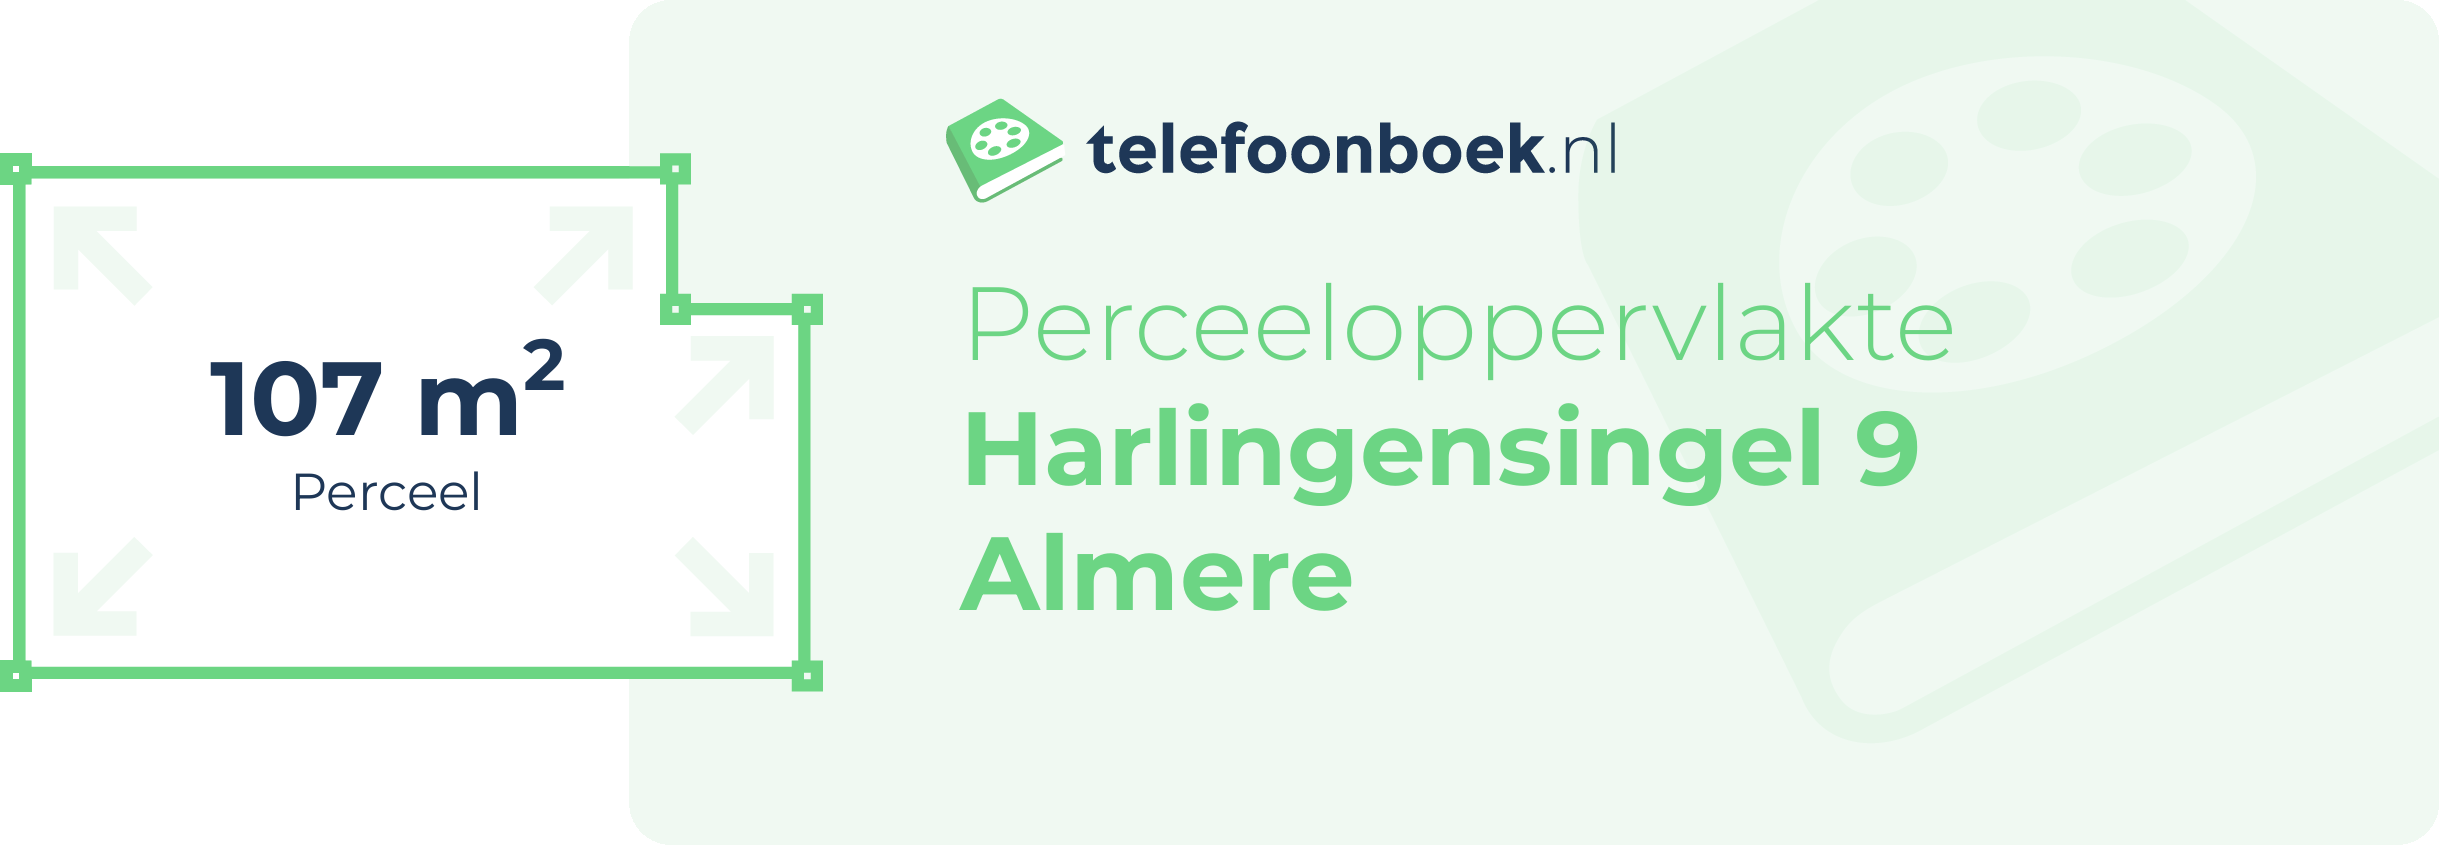 Perceeloppervlakte Harlingensingel 9 Almere